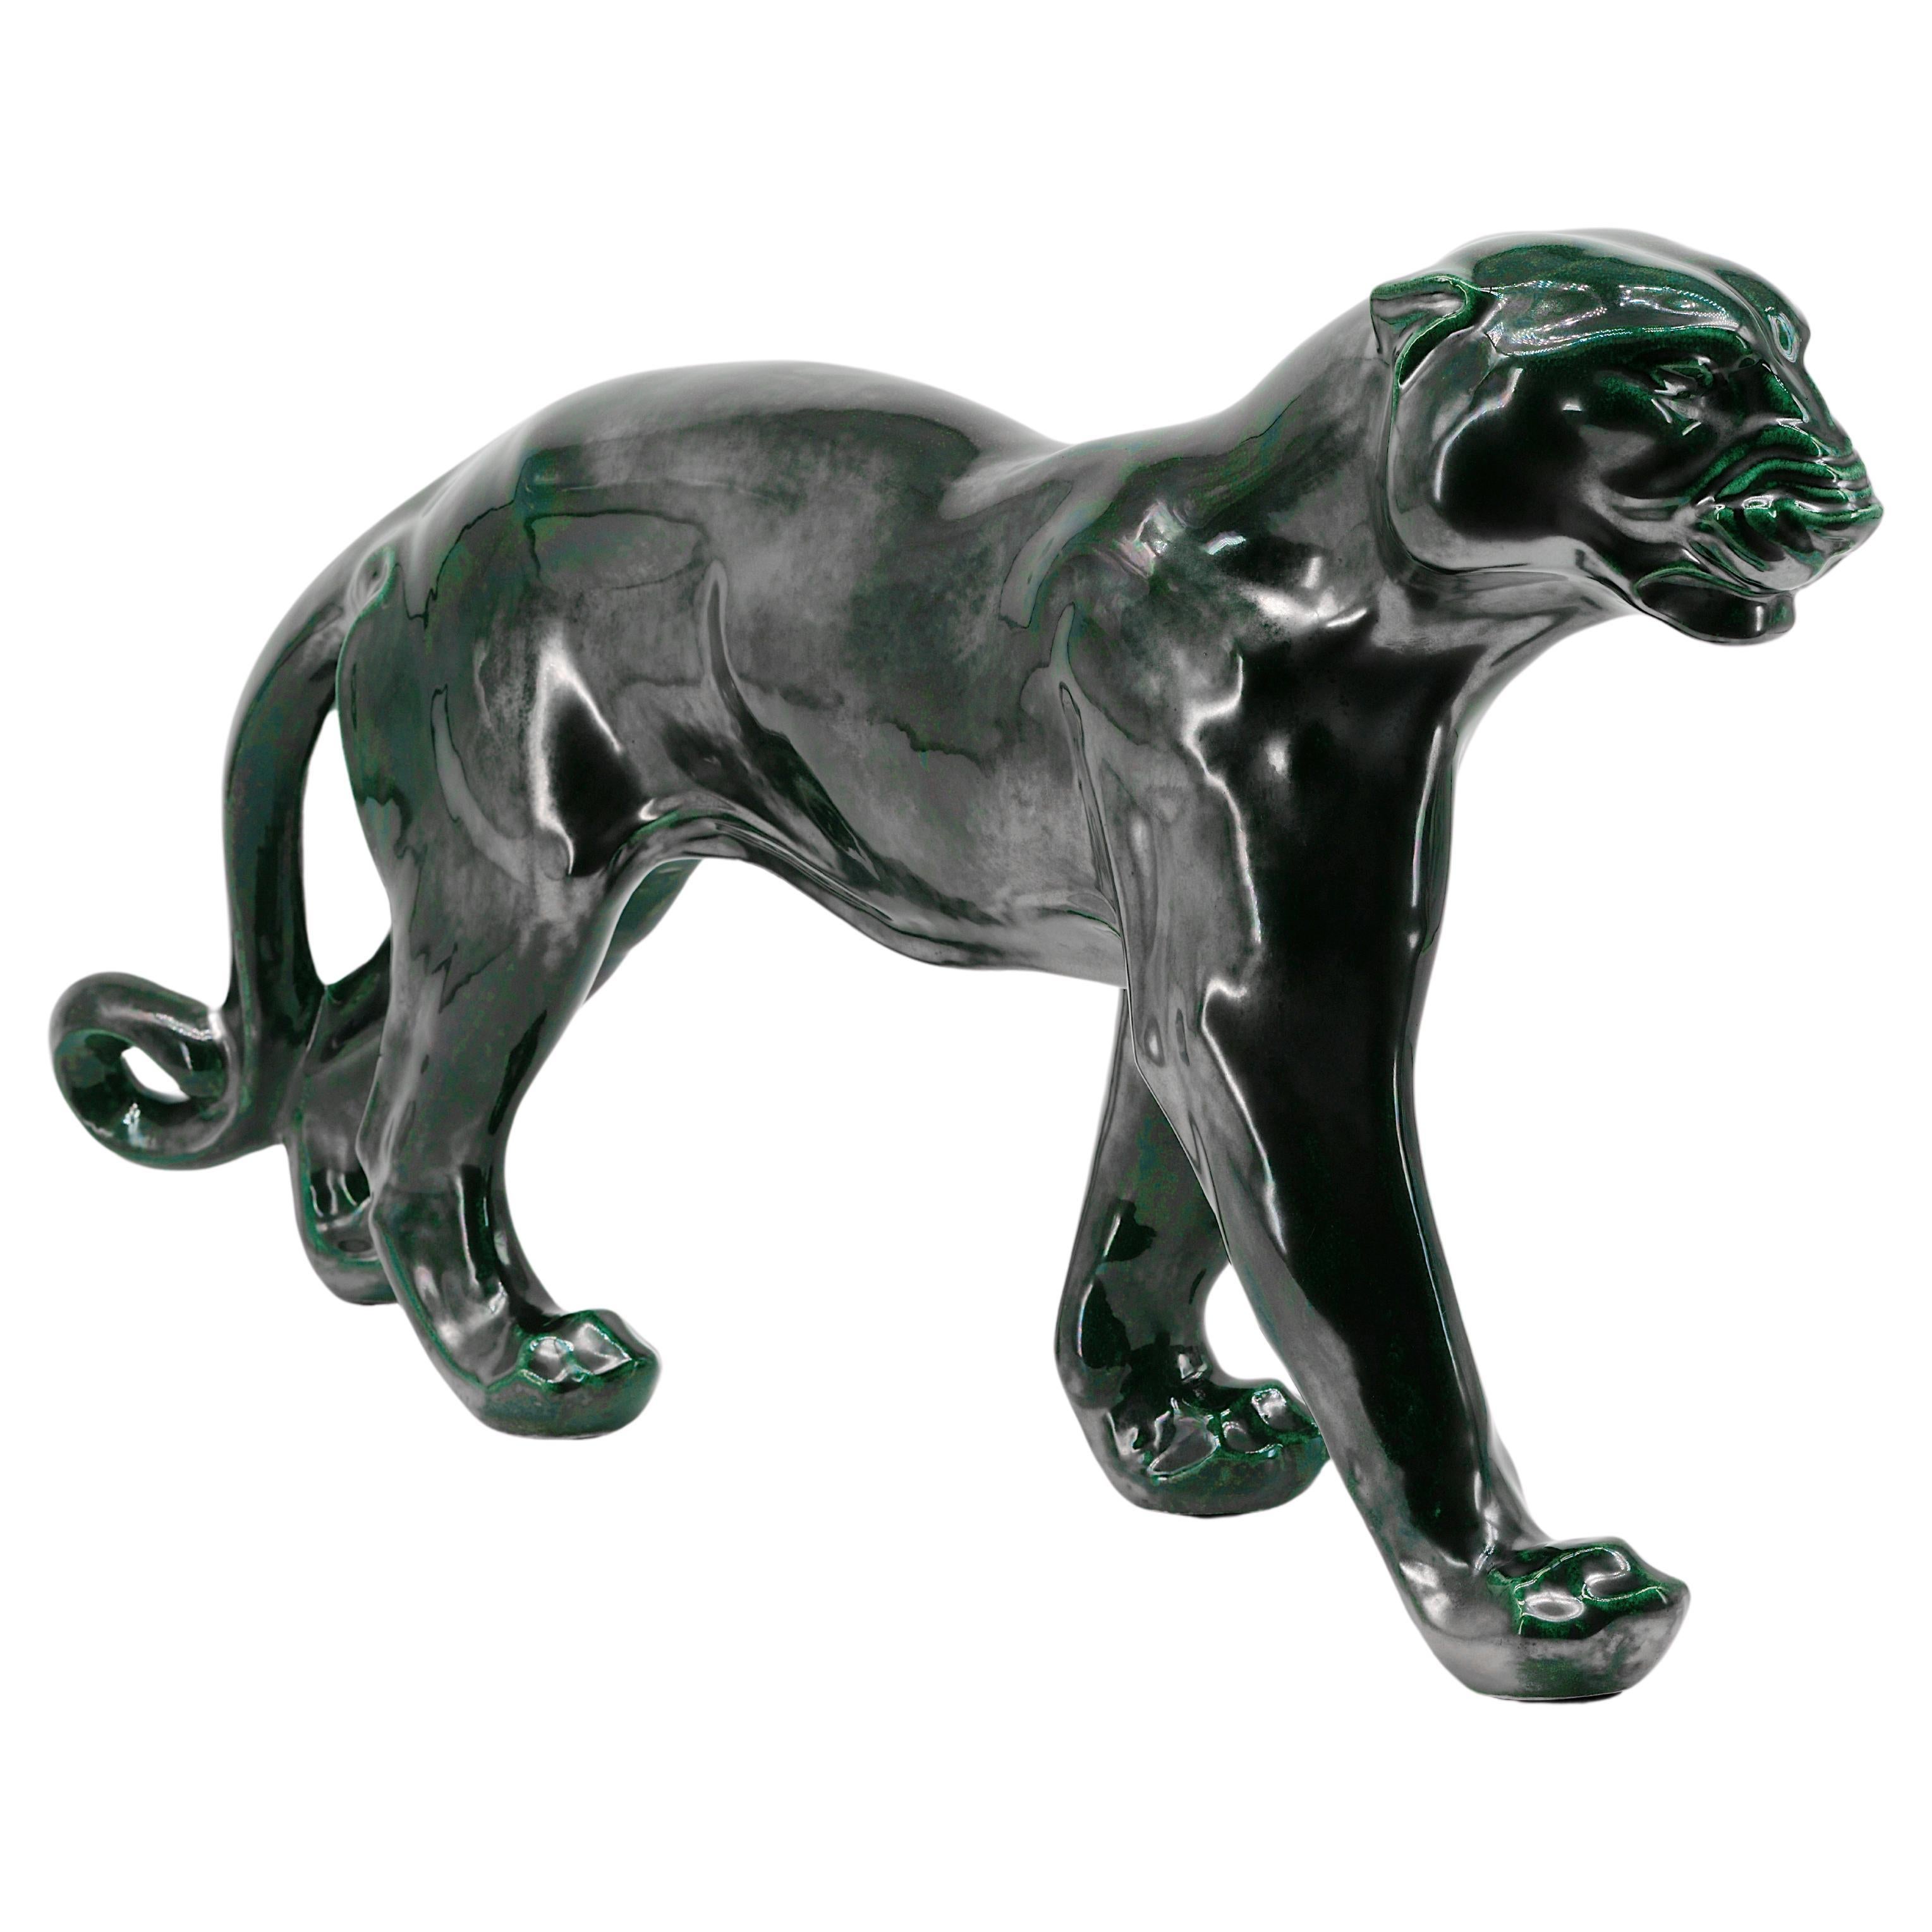 Santiago Rodriguez Bonome French Art Deco Ceramic Panther Sculpture, 1940s For Sale